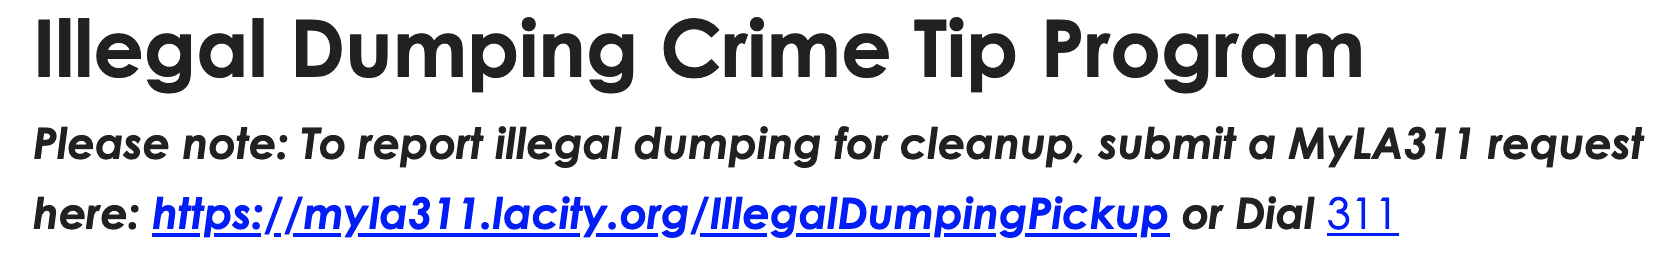 Illegal Dumping Crime Tip Program